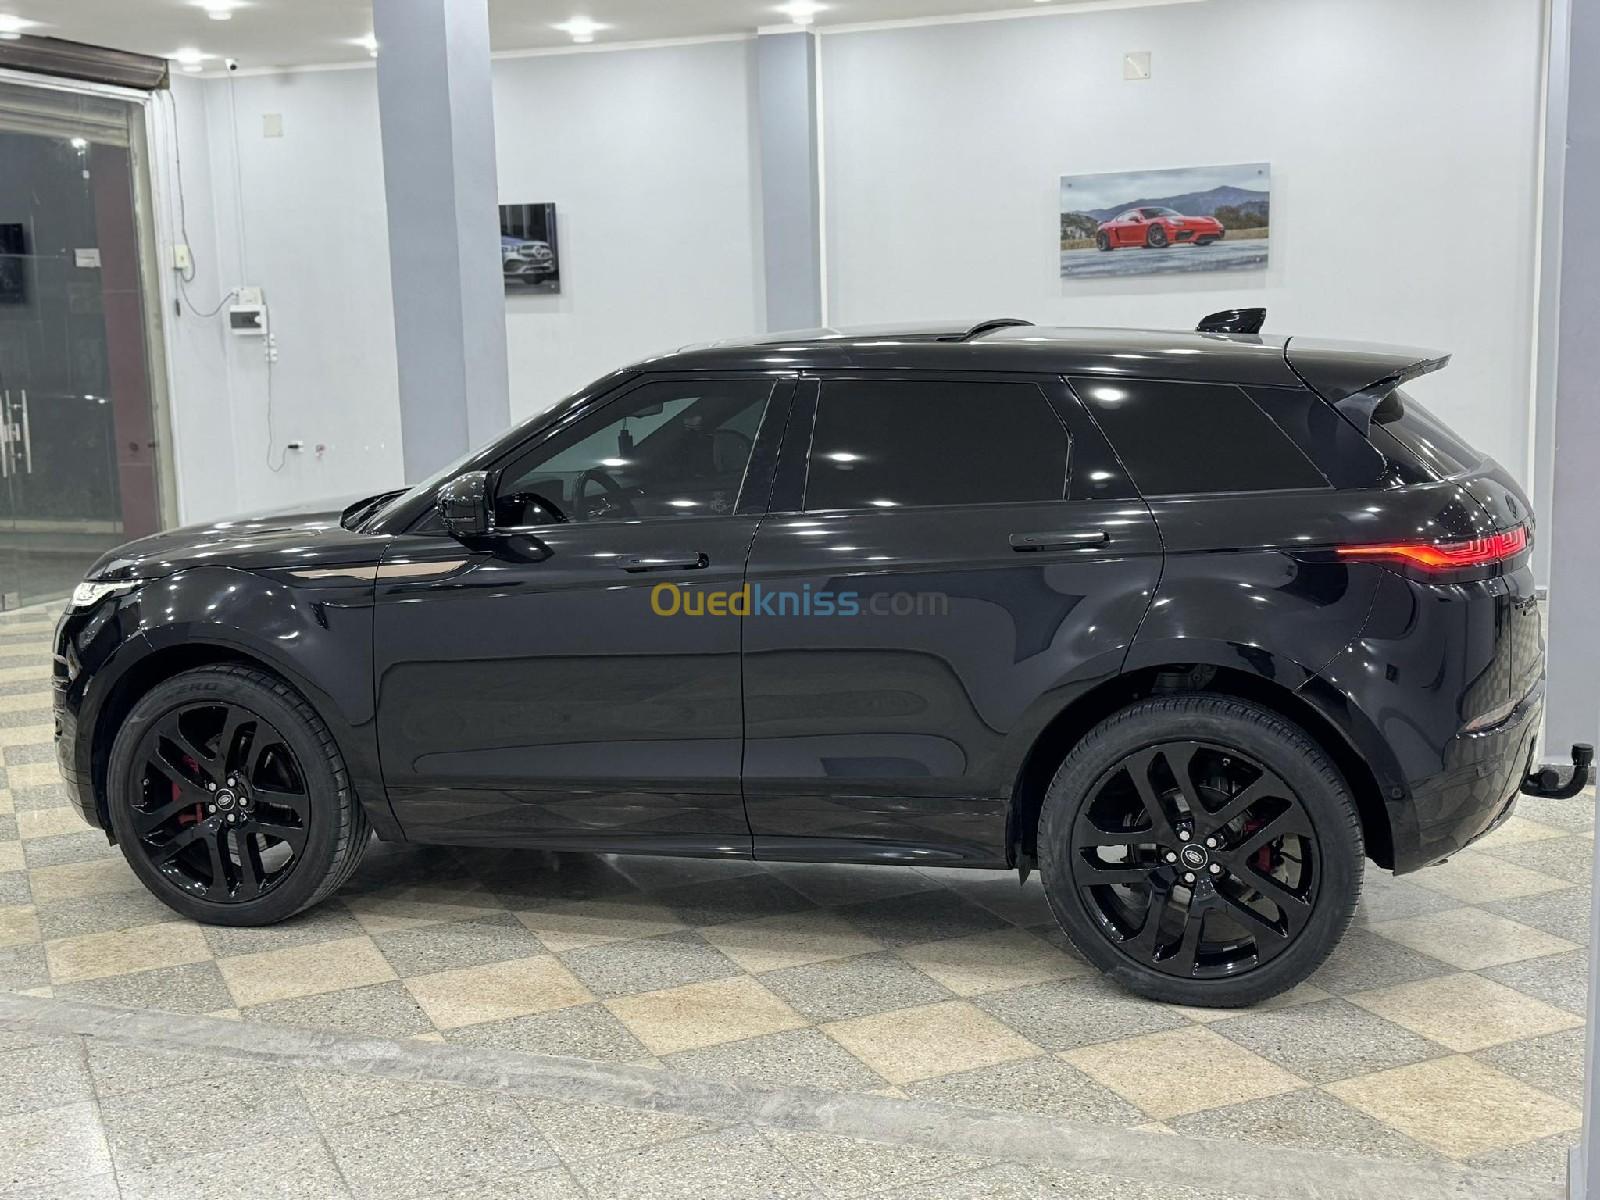 Land Rover Range Rover Evoque 2021 Range Rover Evoque